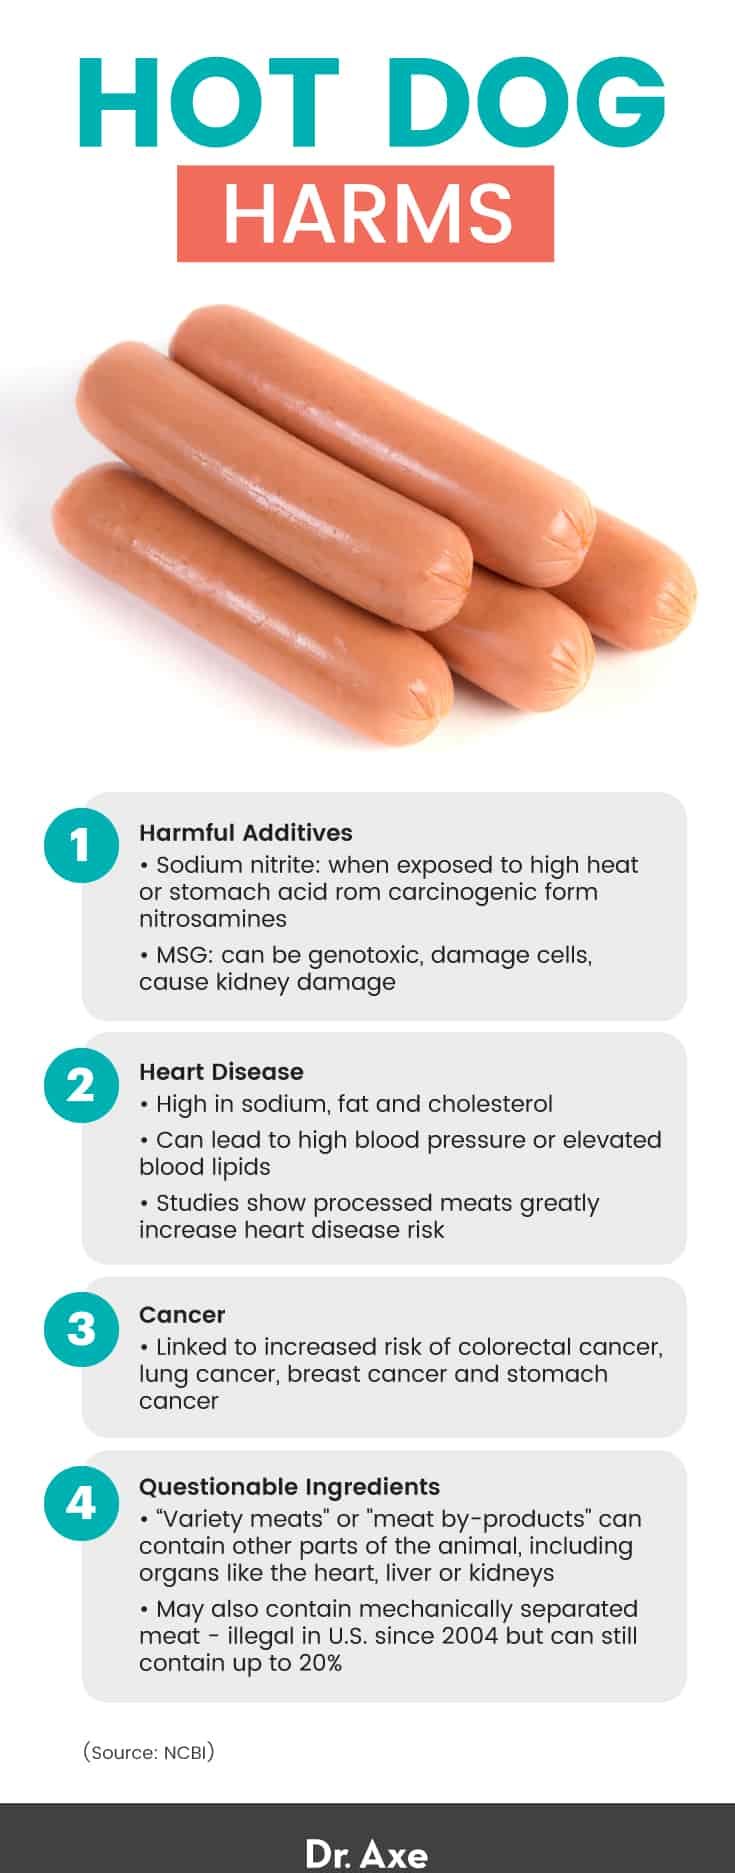 Hot dog harms - Dr. Axe